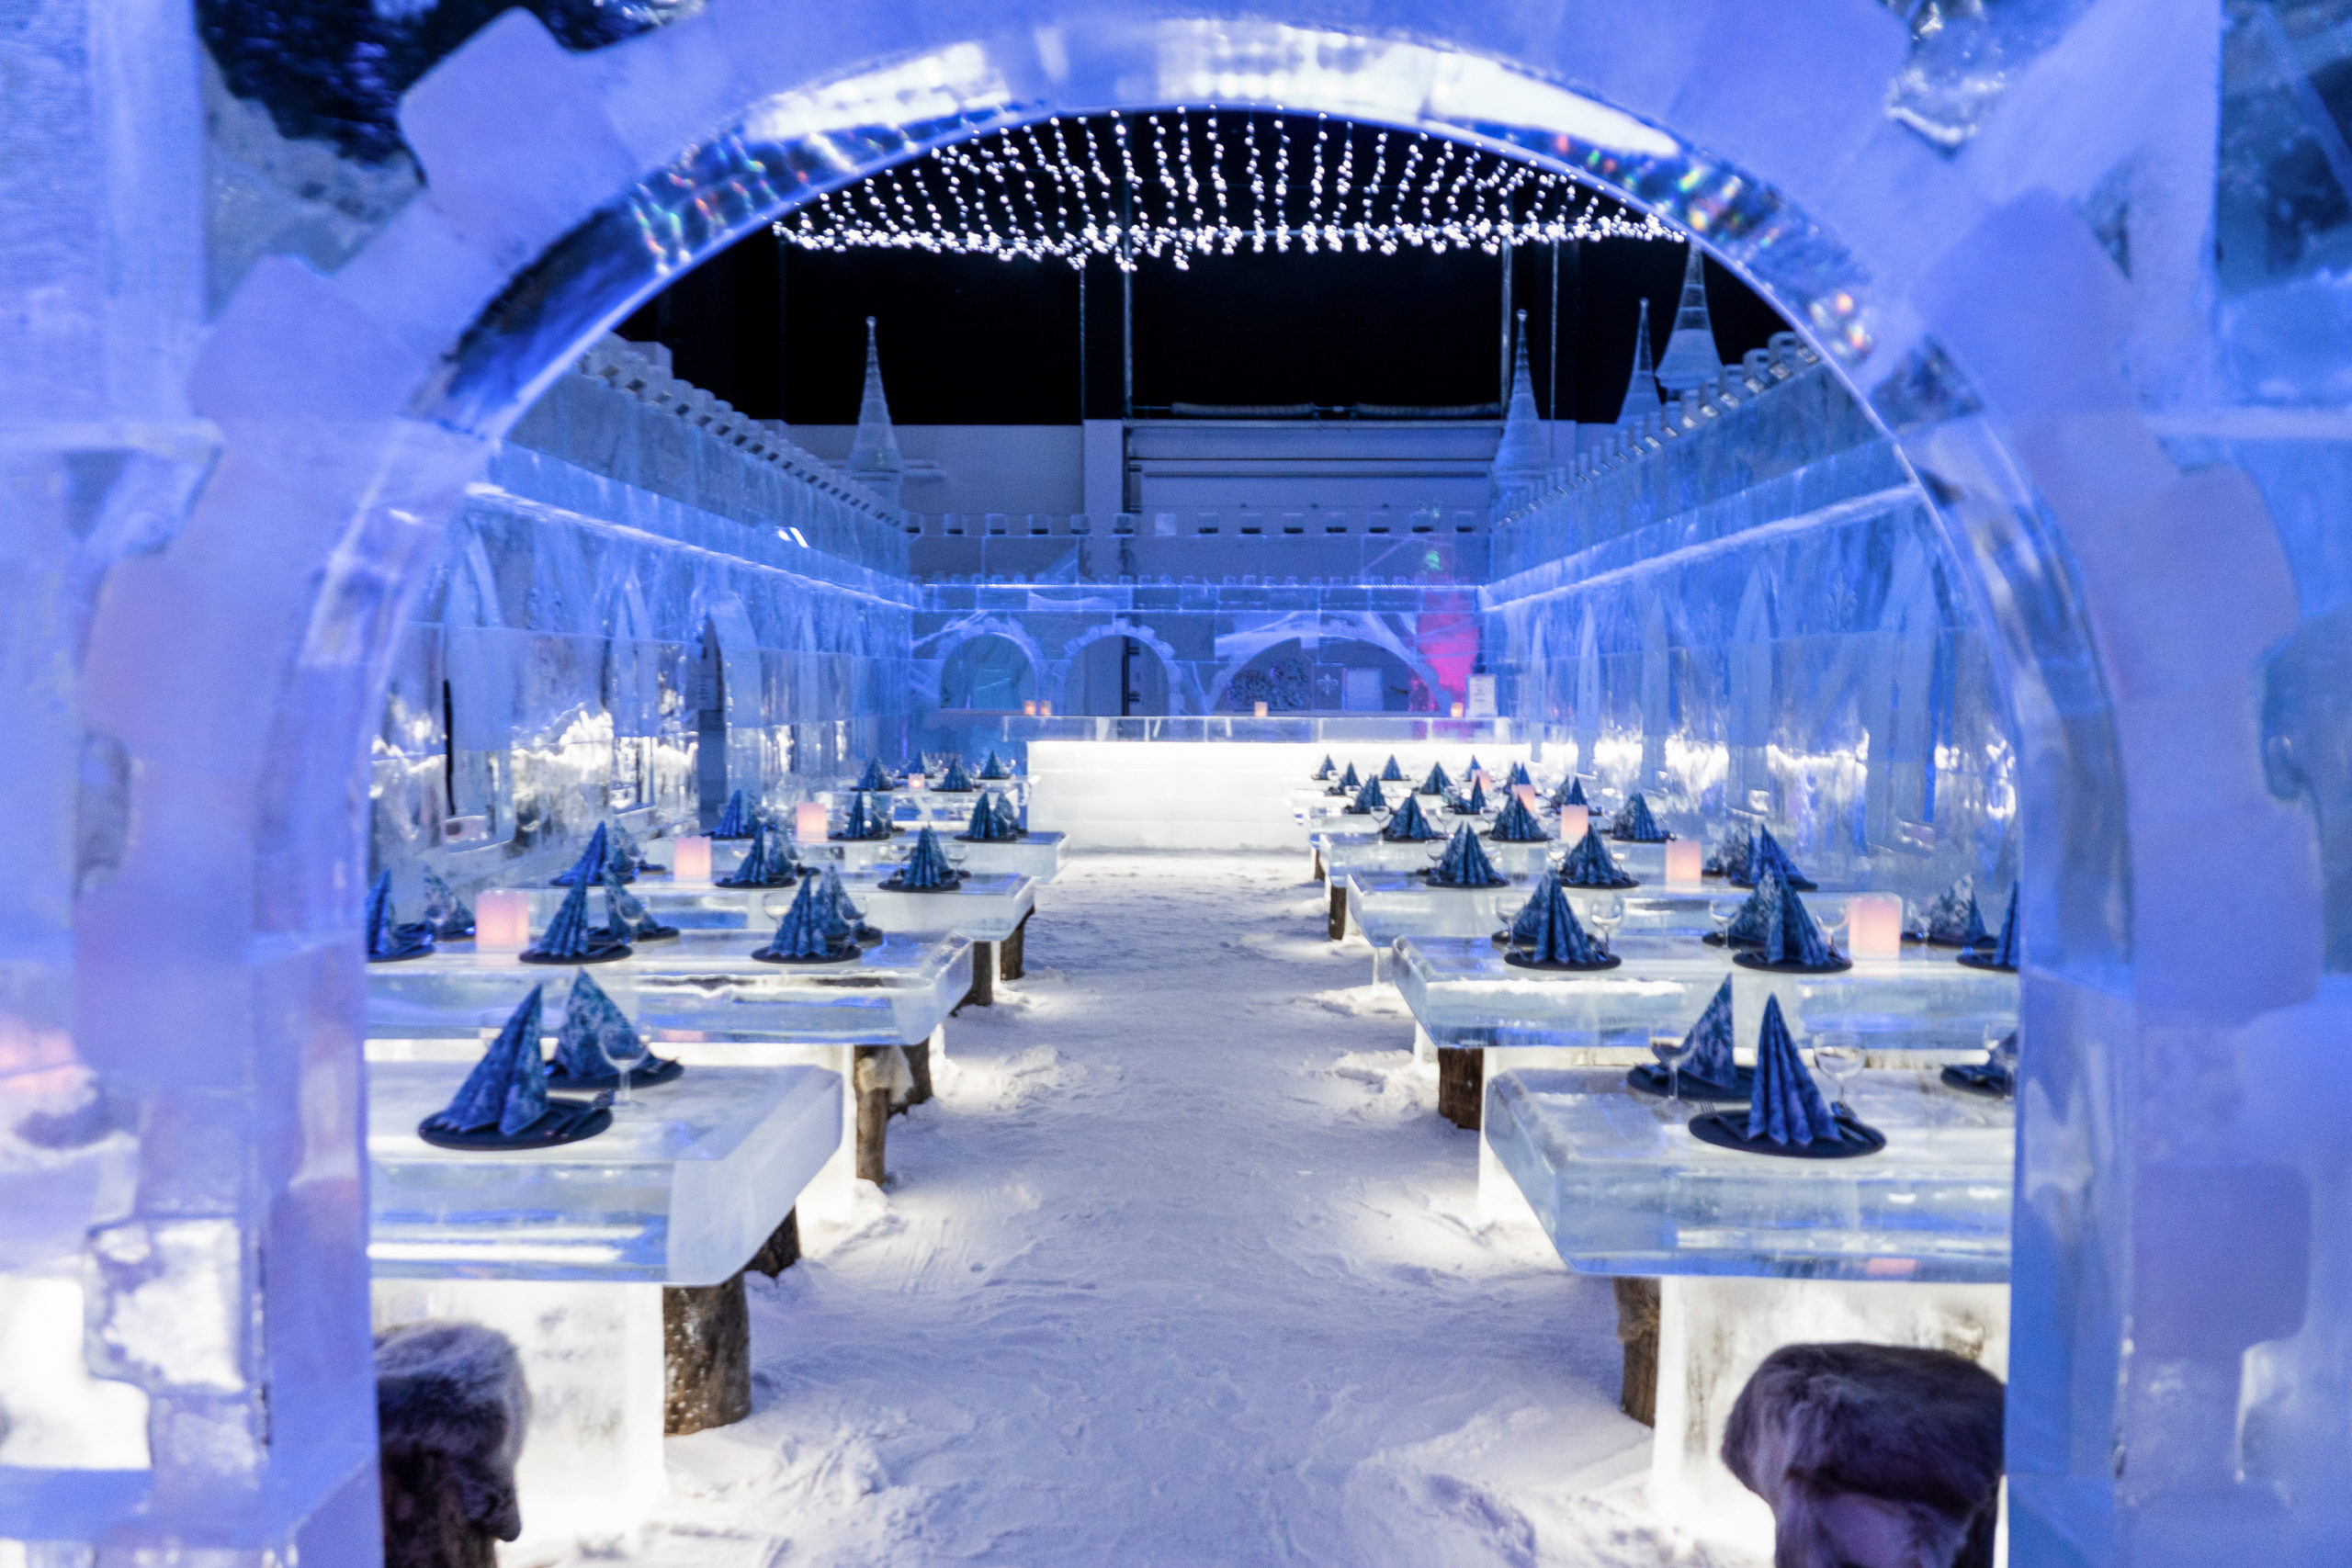 Rovaniemi winter activities – Ice Restaurant365. Wild Nordic Finland @wildnordicfinland.